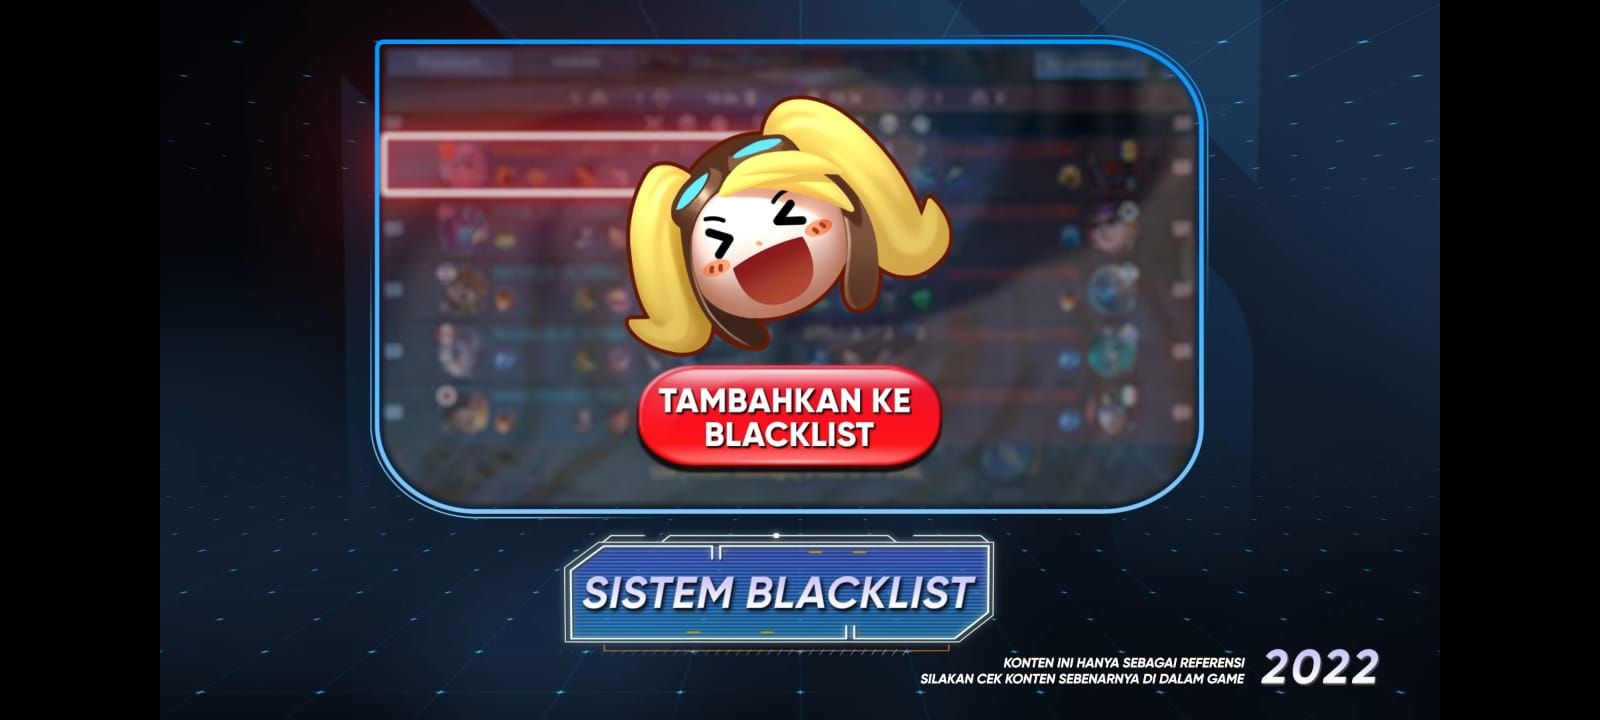 Fitur Blacklist 